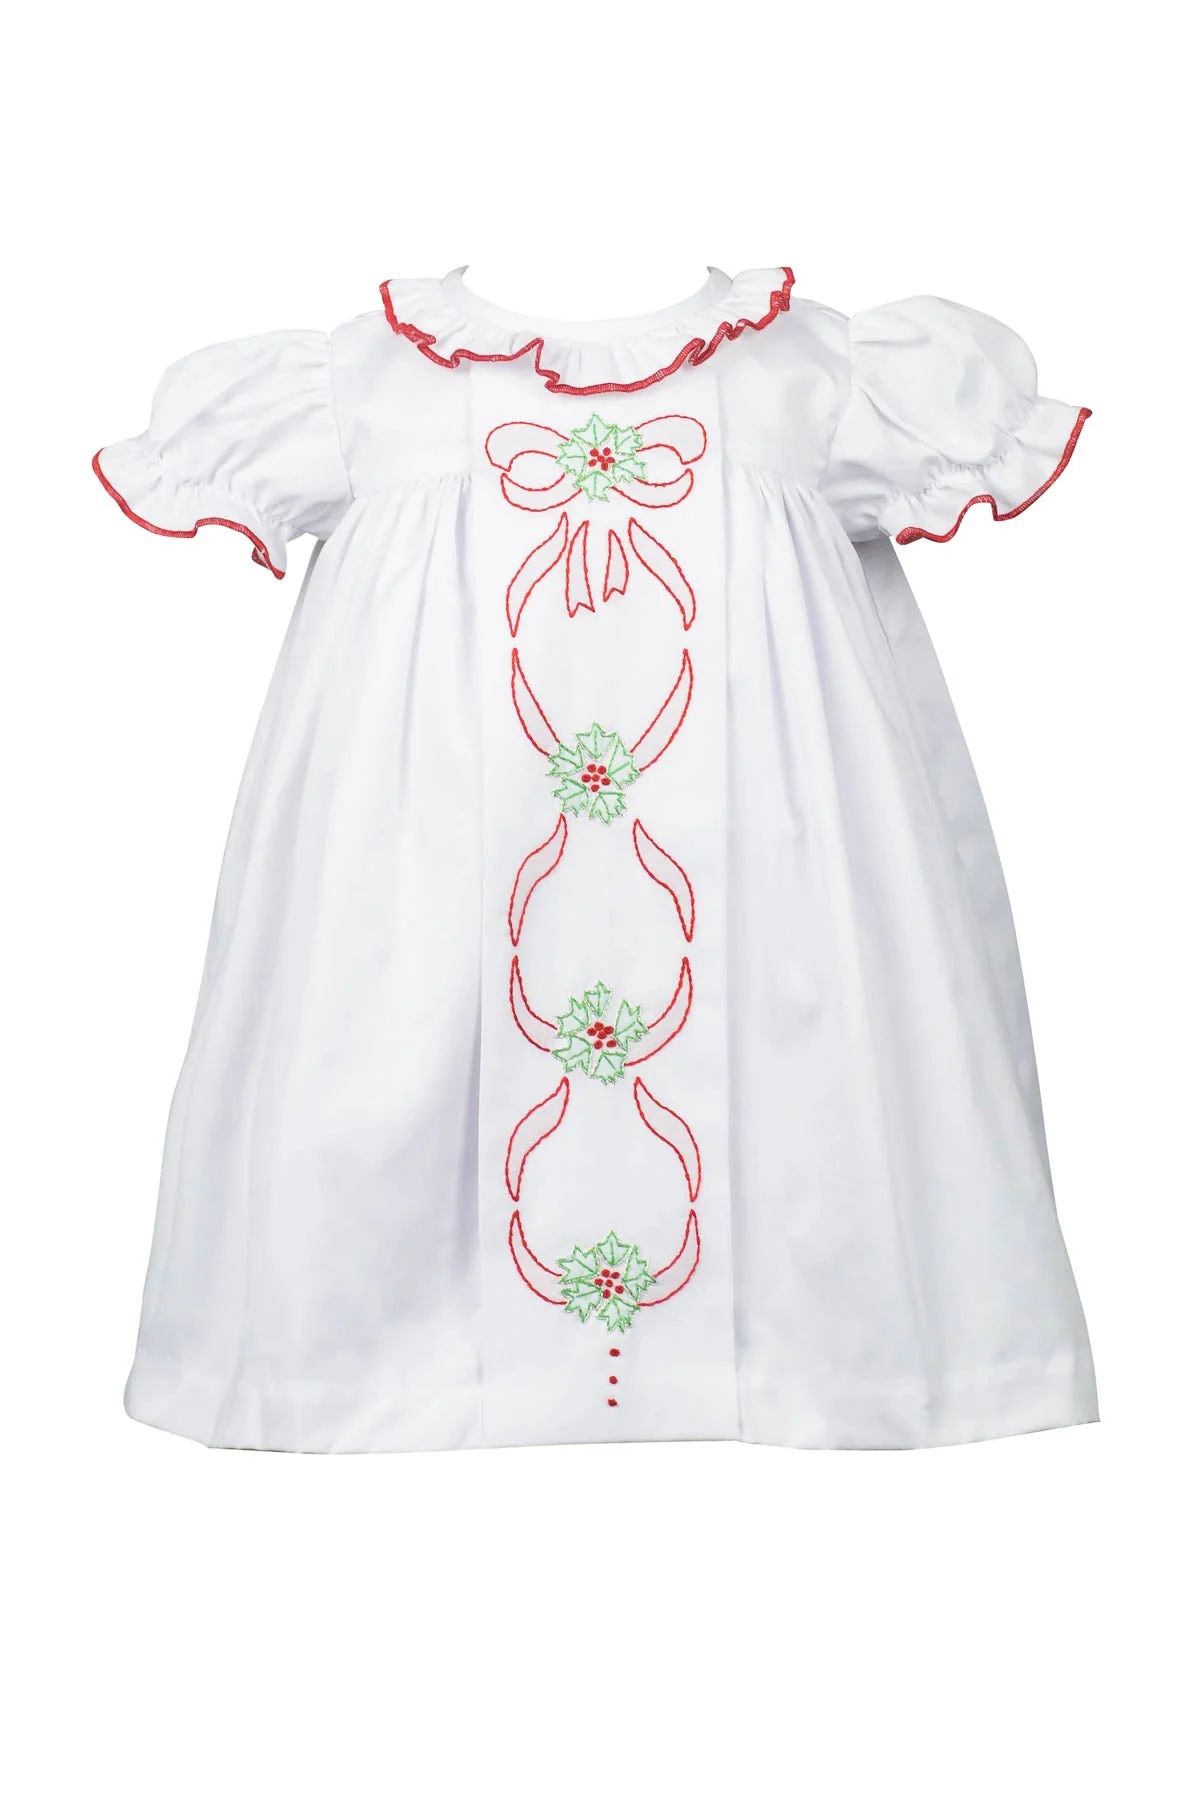 The Proper Peony Noel White Christmas Dress | JoJo Mommy